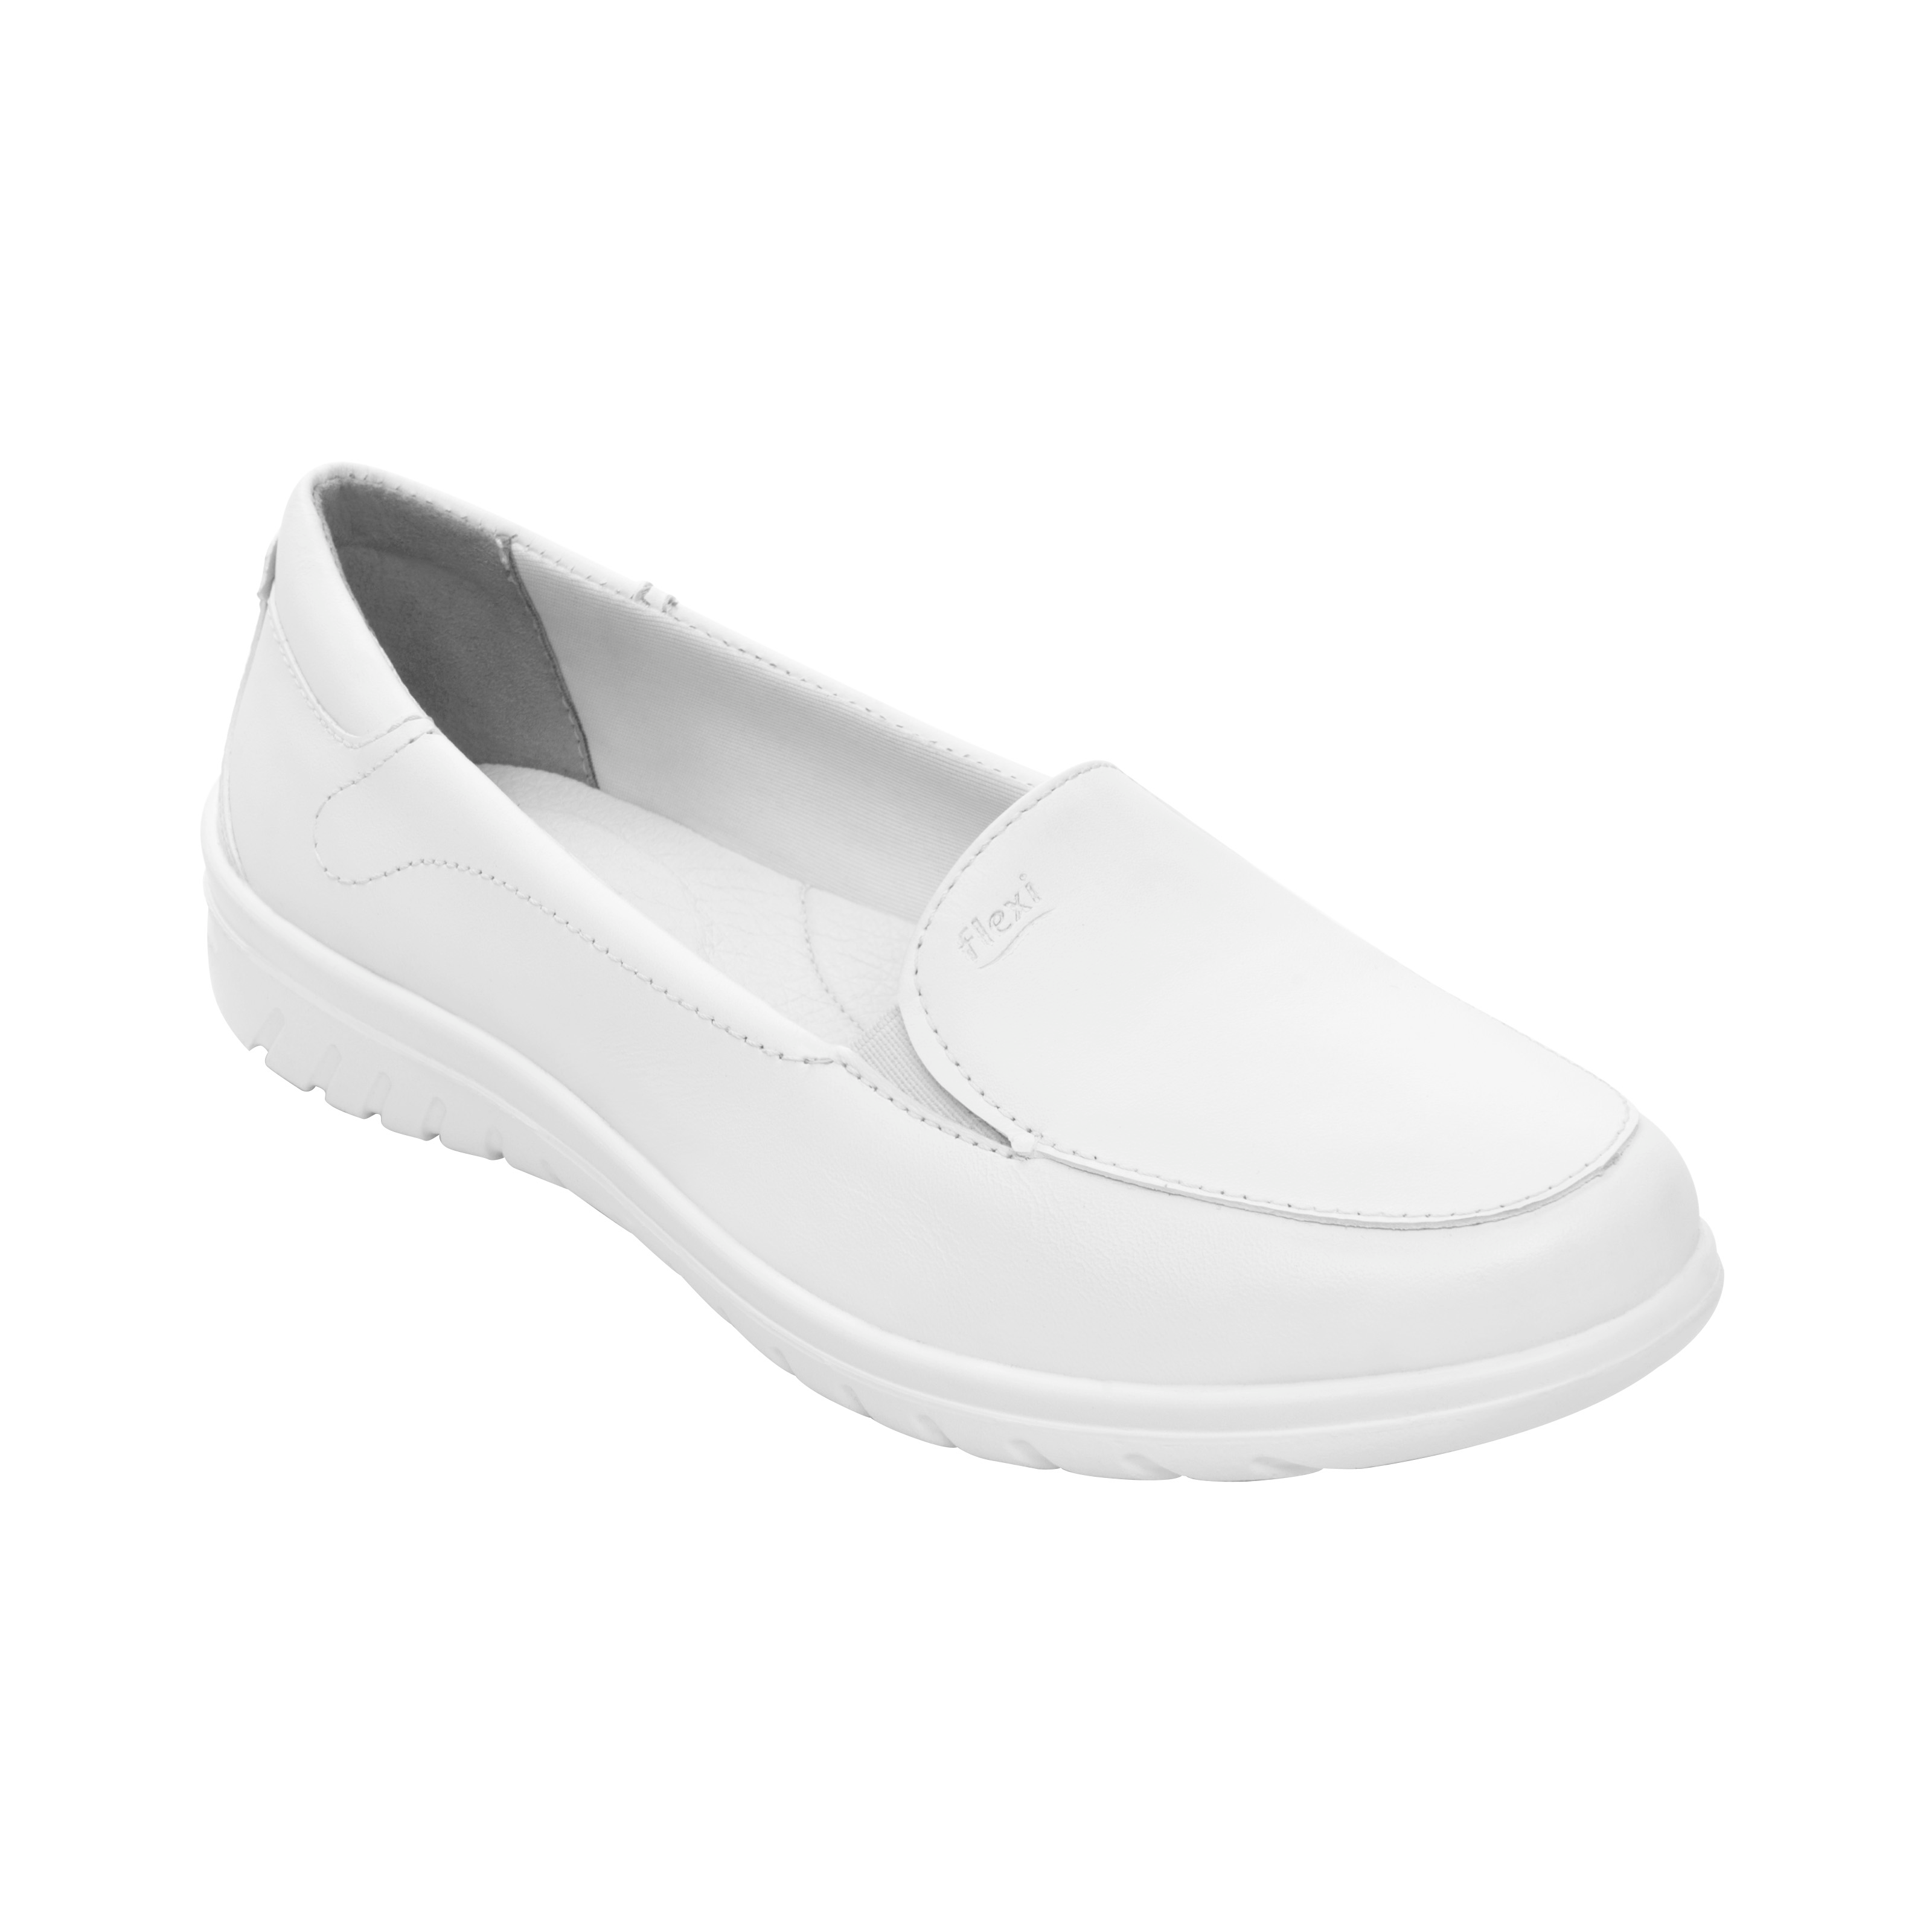 Zapato de Servicio Clinico Flexi Blanco para Mujer [FFF3444]